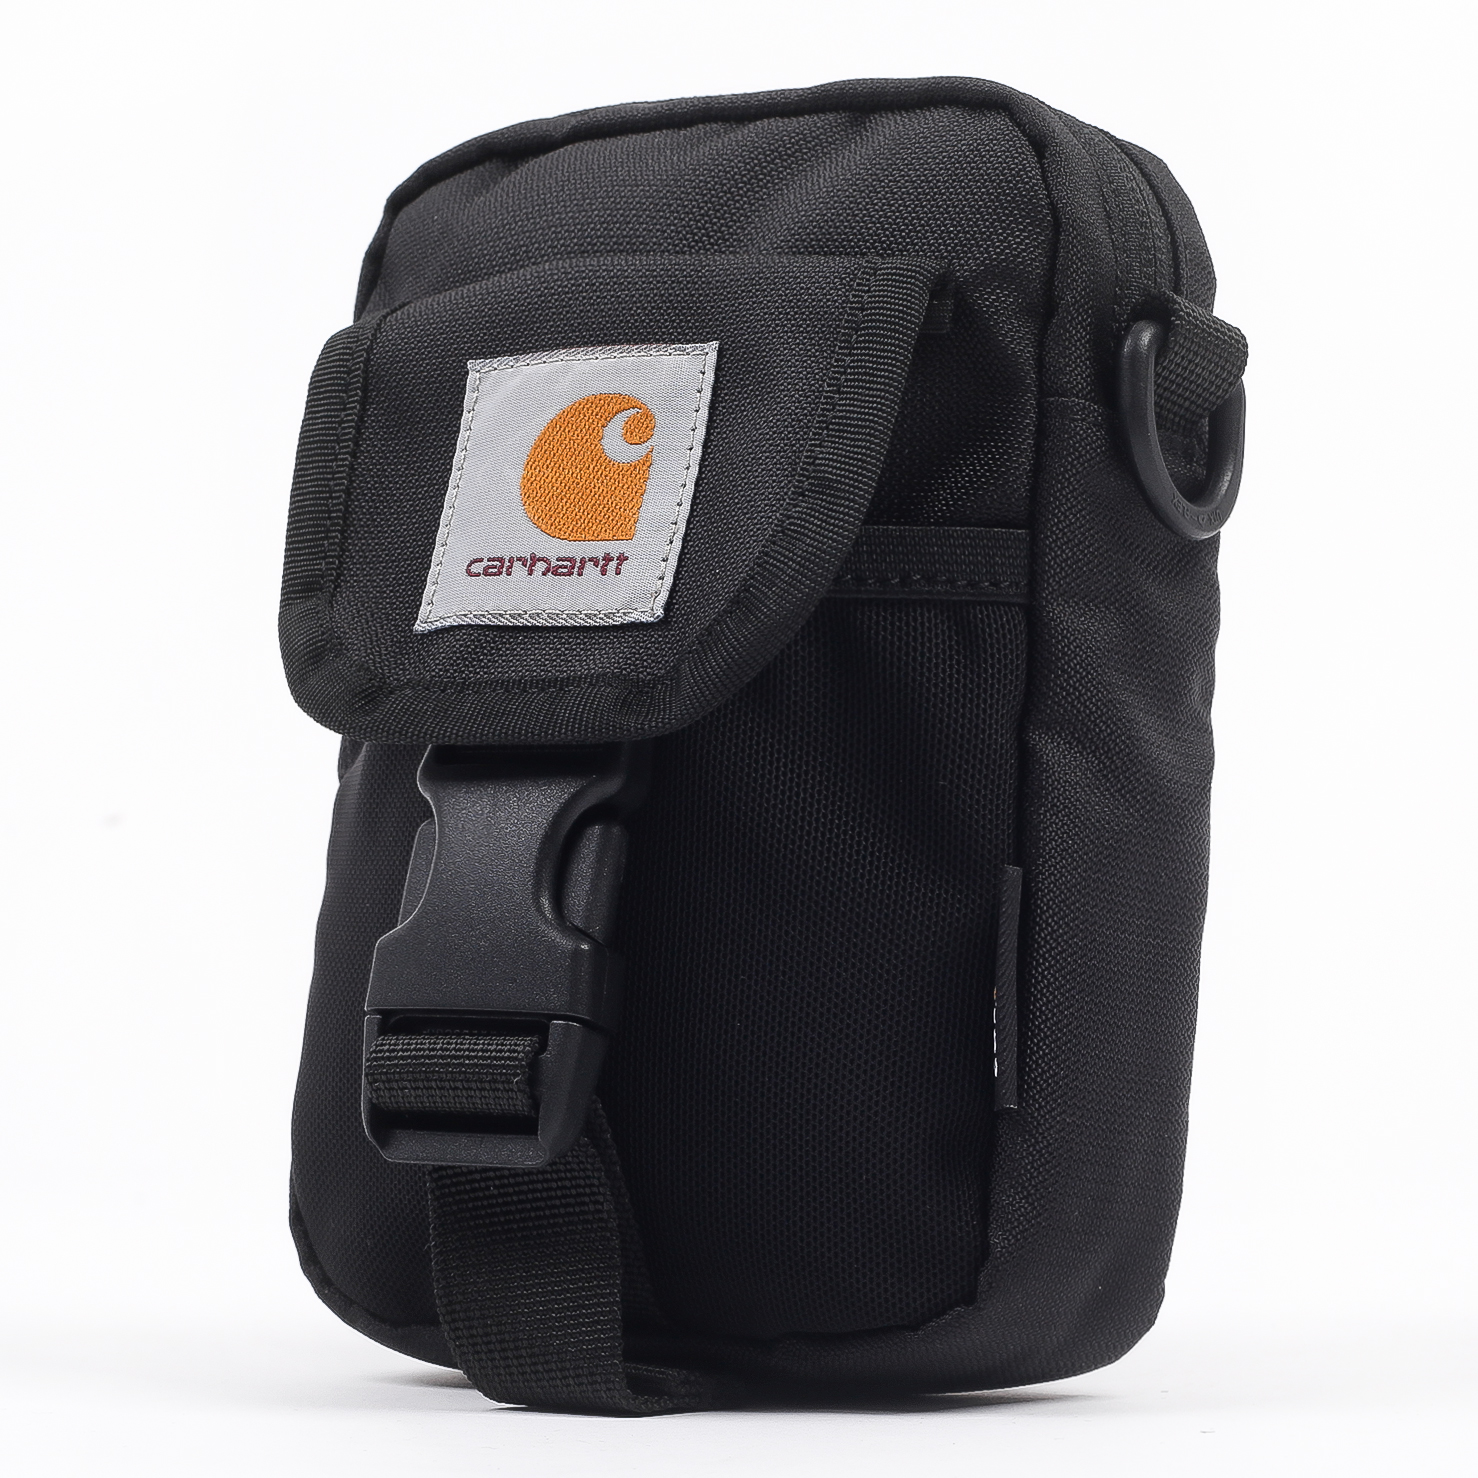  черная сумка Carhartt WIP Delta Shoulder Pouch I028153-black - цена, описание, фото 6